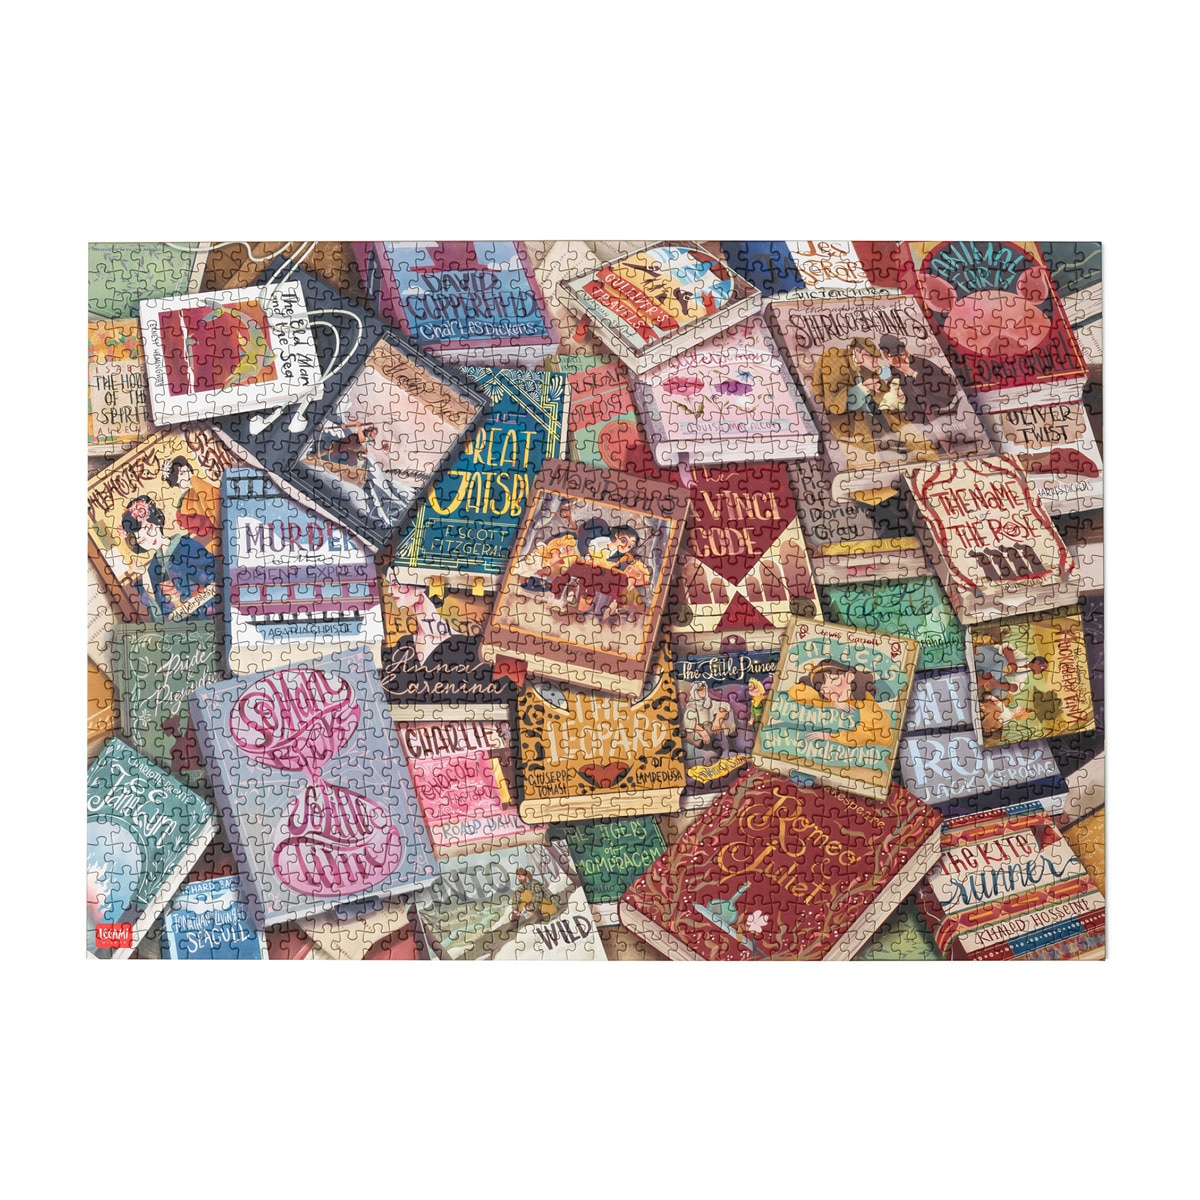 Legami - Puzzle 1000 Piezas Booklovers